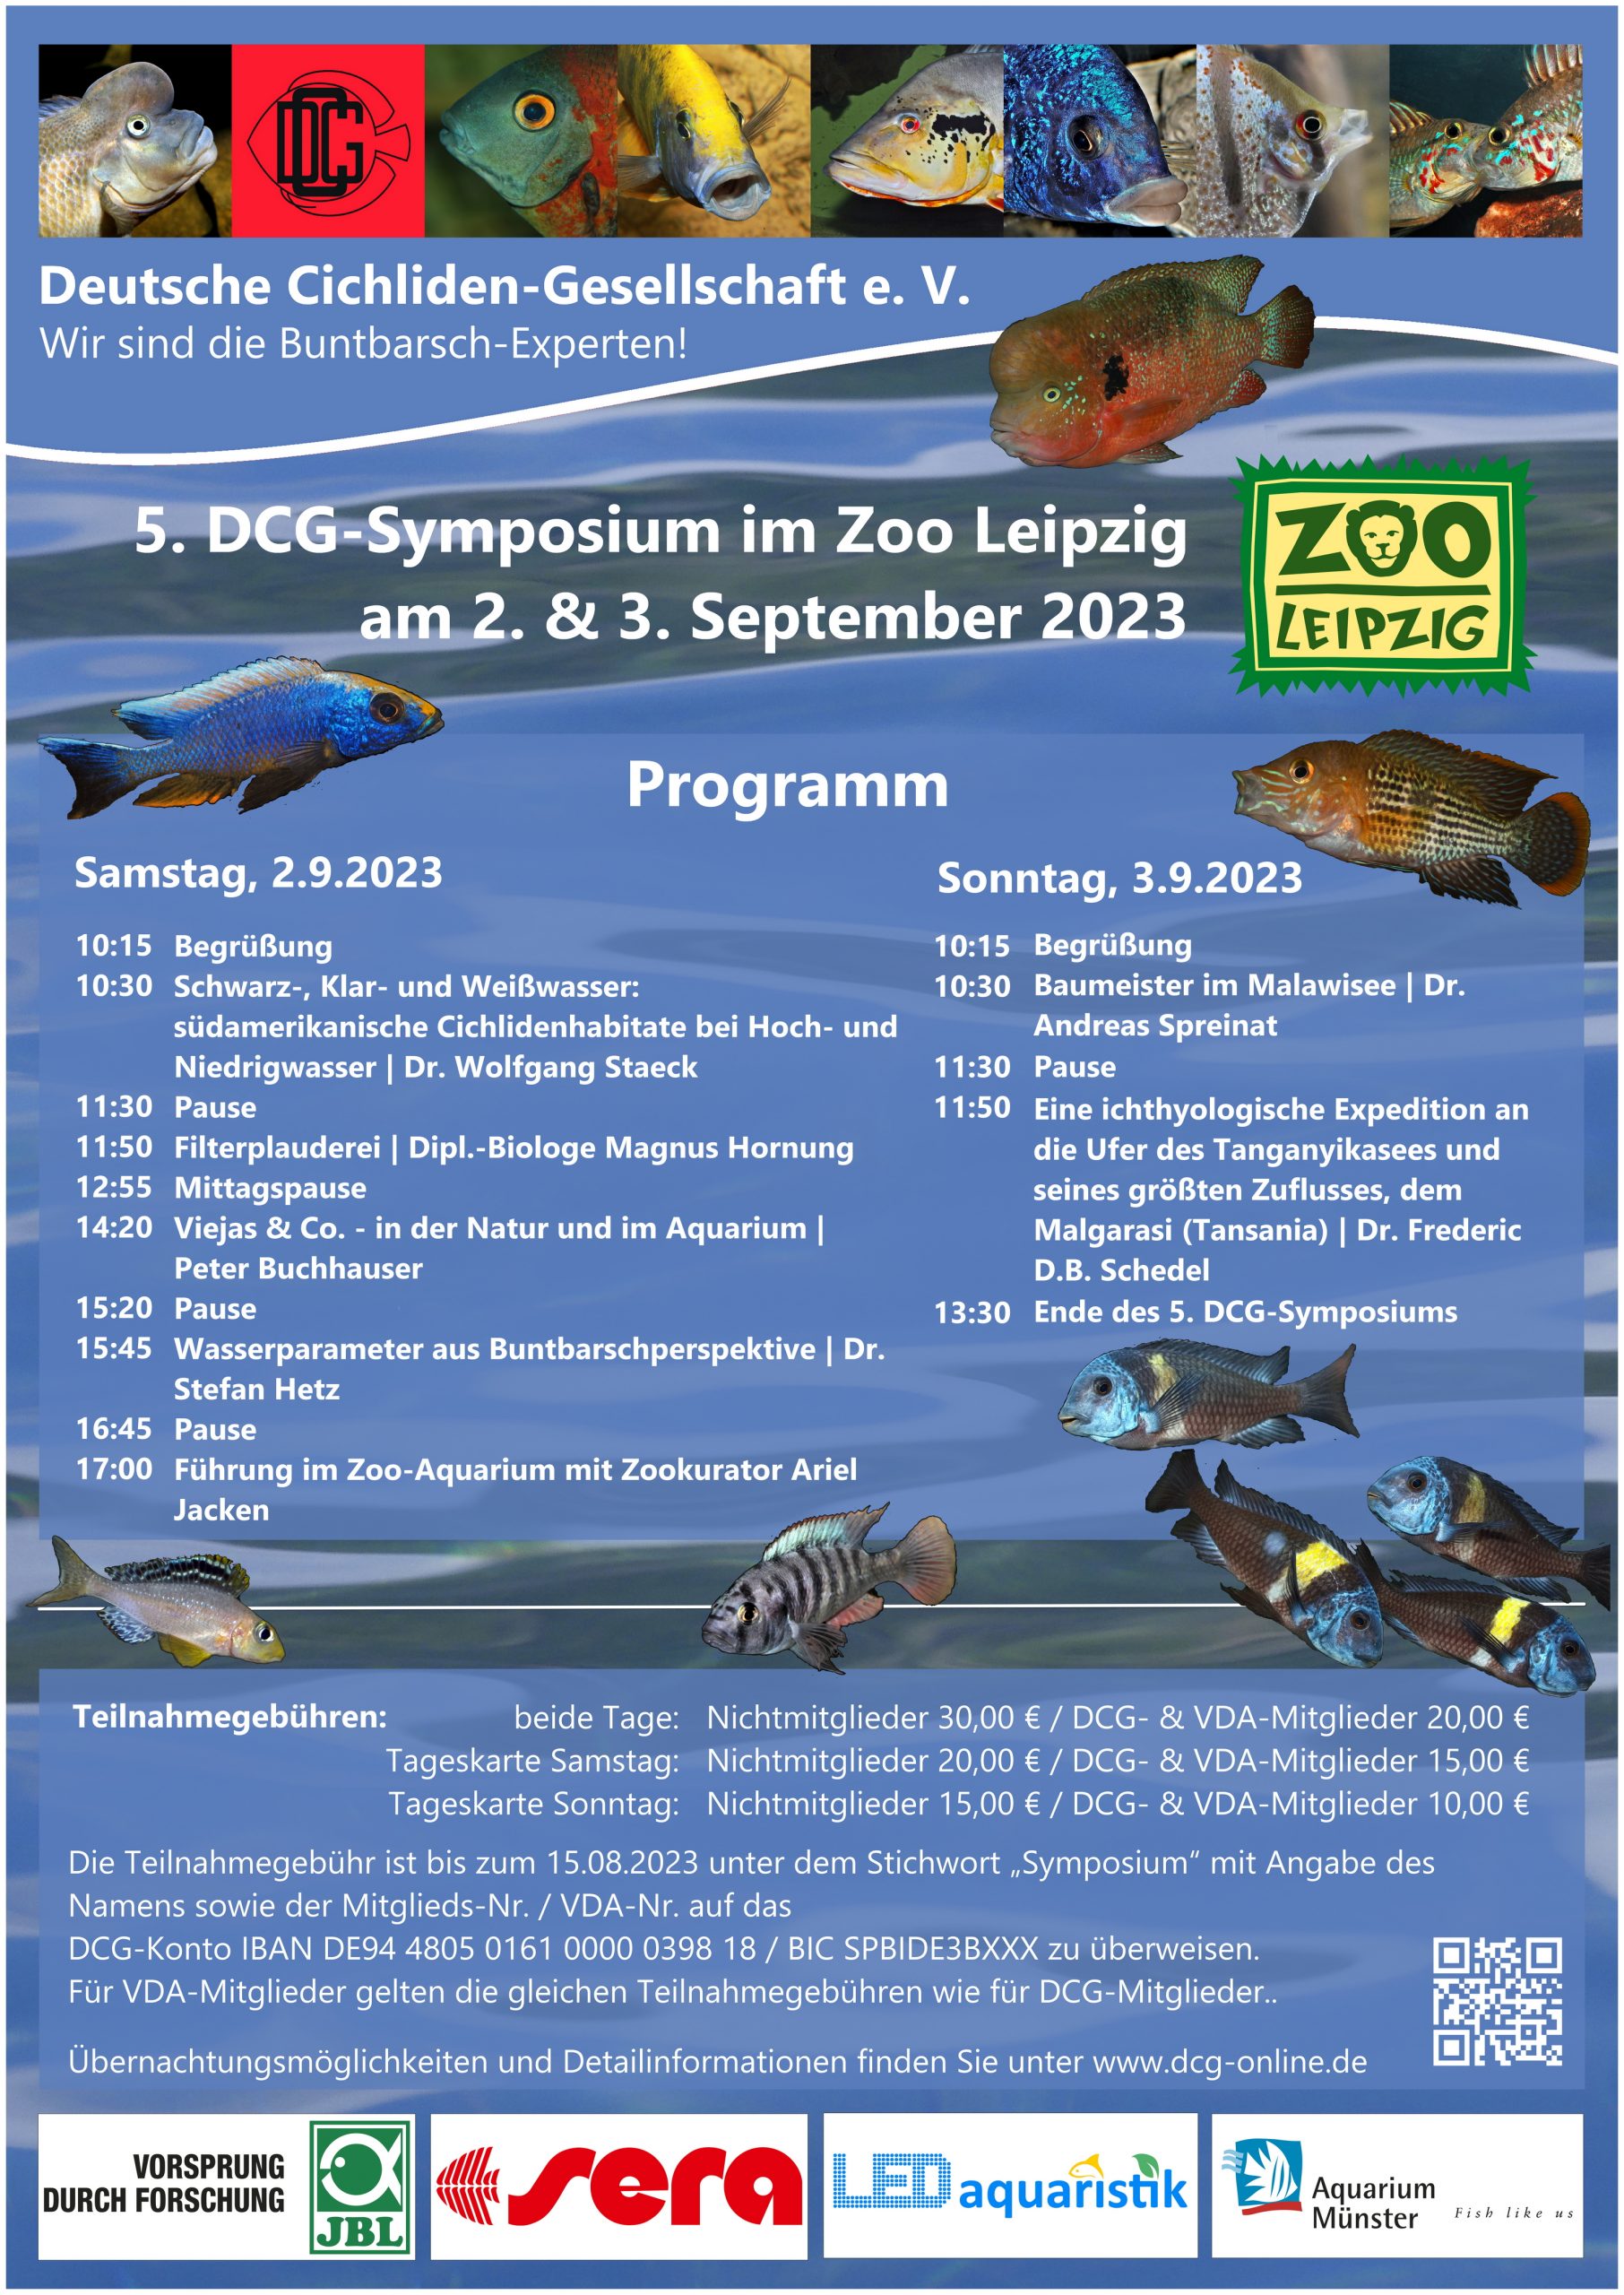 Druckversion für Zeitung Symposium Leipzig 02 09 2023 Poster Programm A0 ueberarbeitet 230329